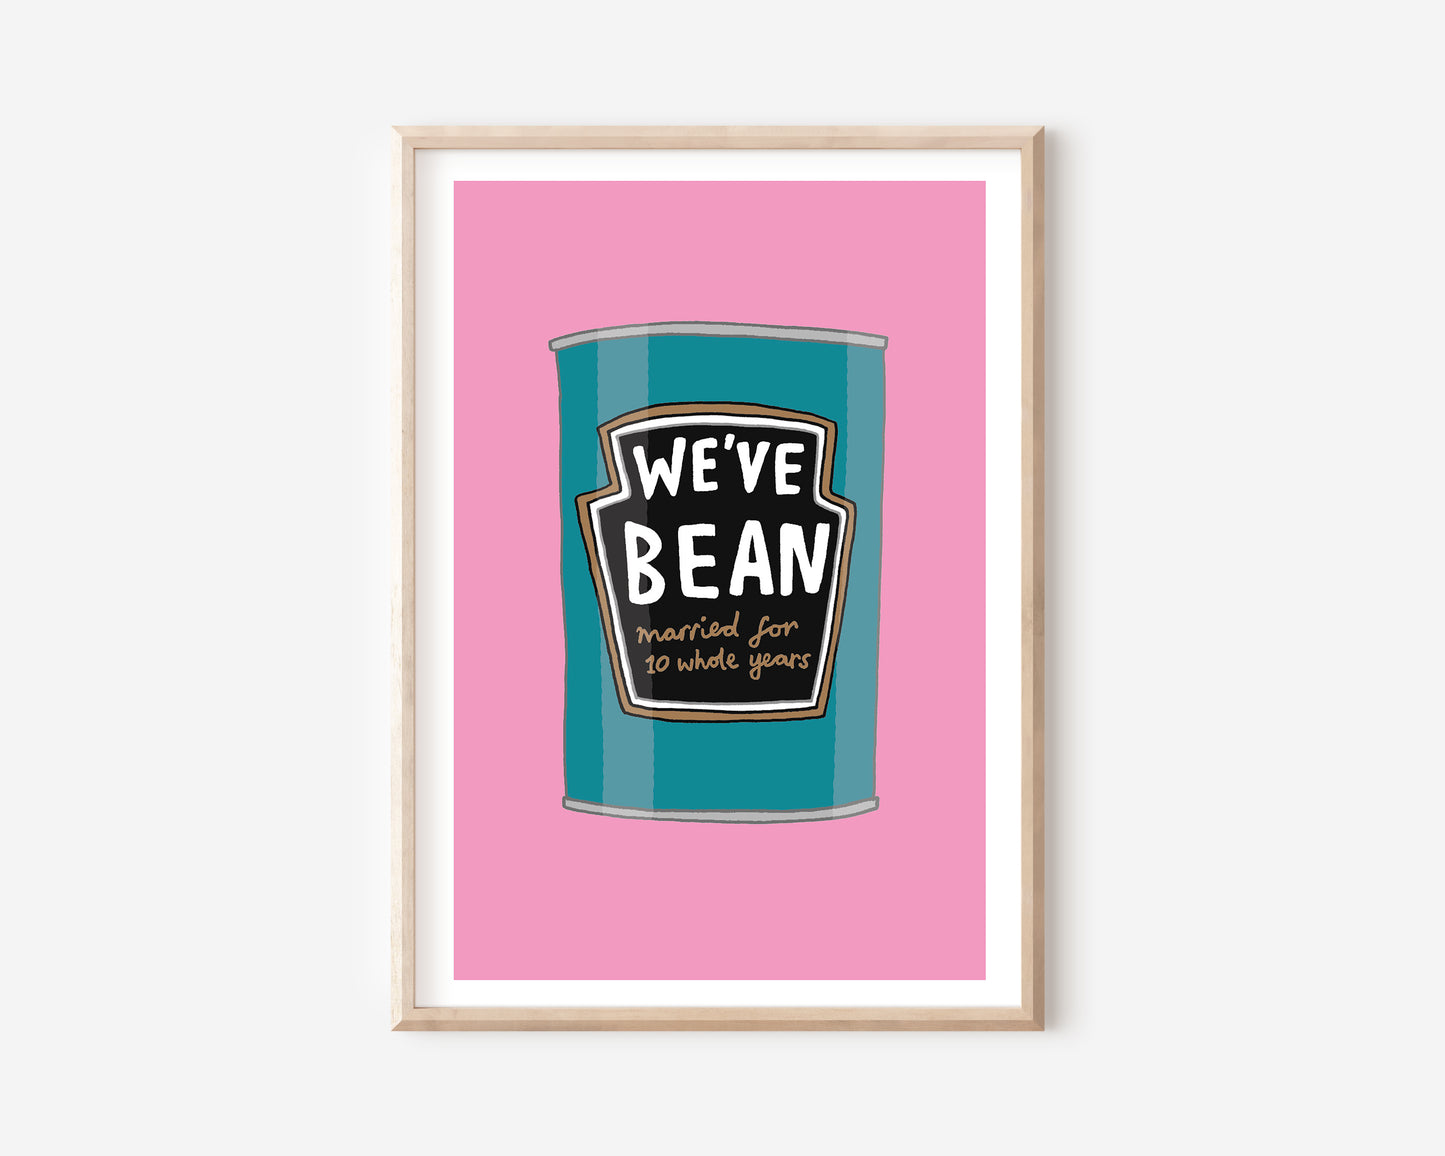 A Beans A4 Print